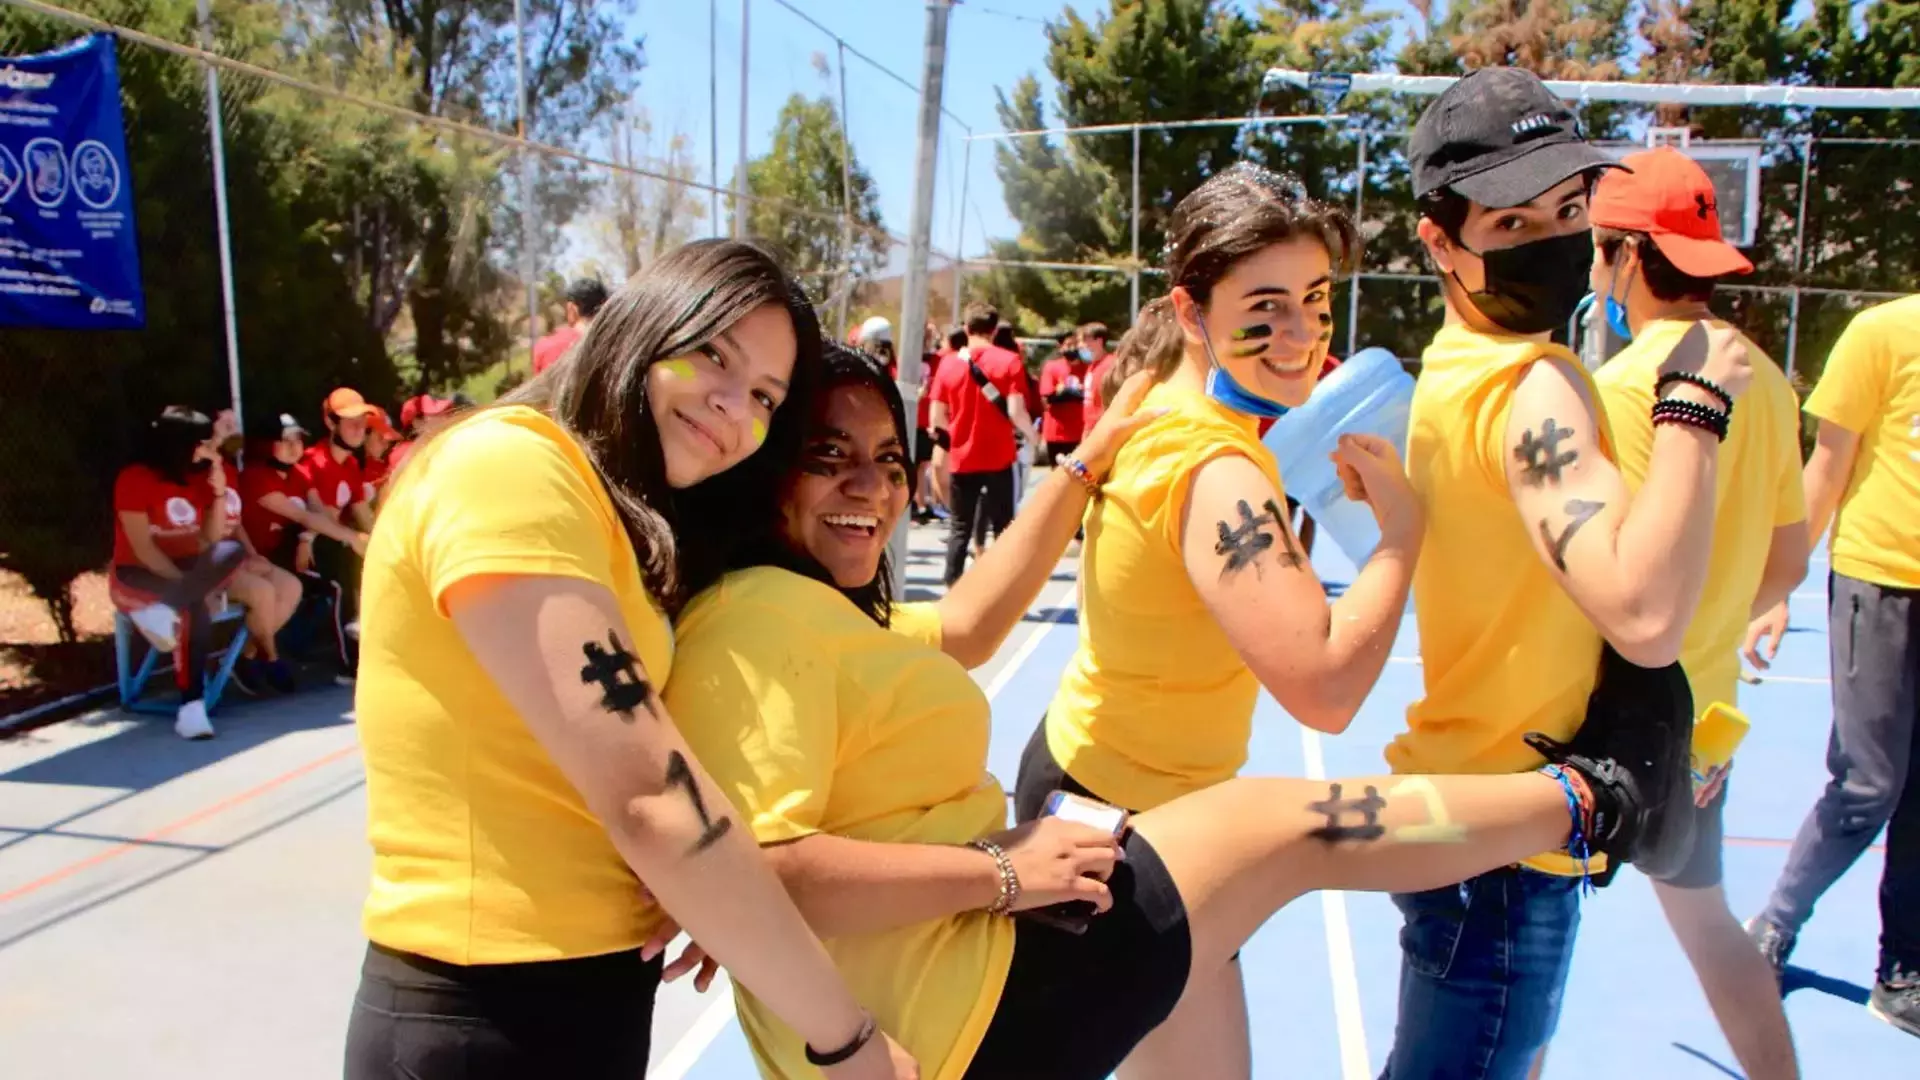 alumnos-prepatec-zacatecas-copa-borrego-convivencia-trabajo-equipo-retos-deportes-arte-diversion